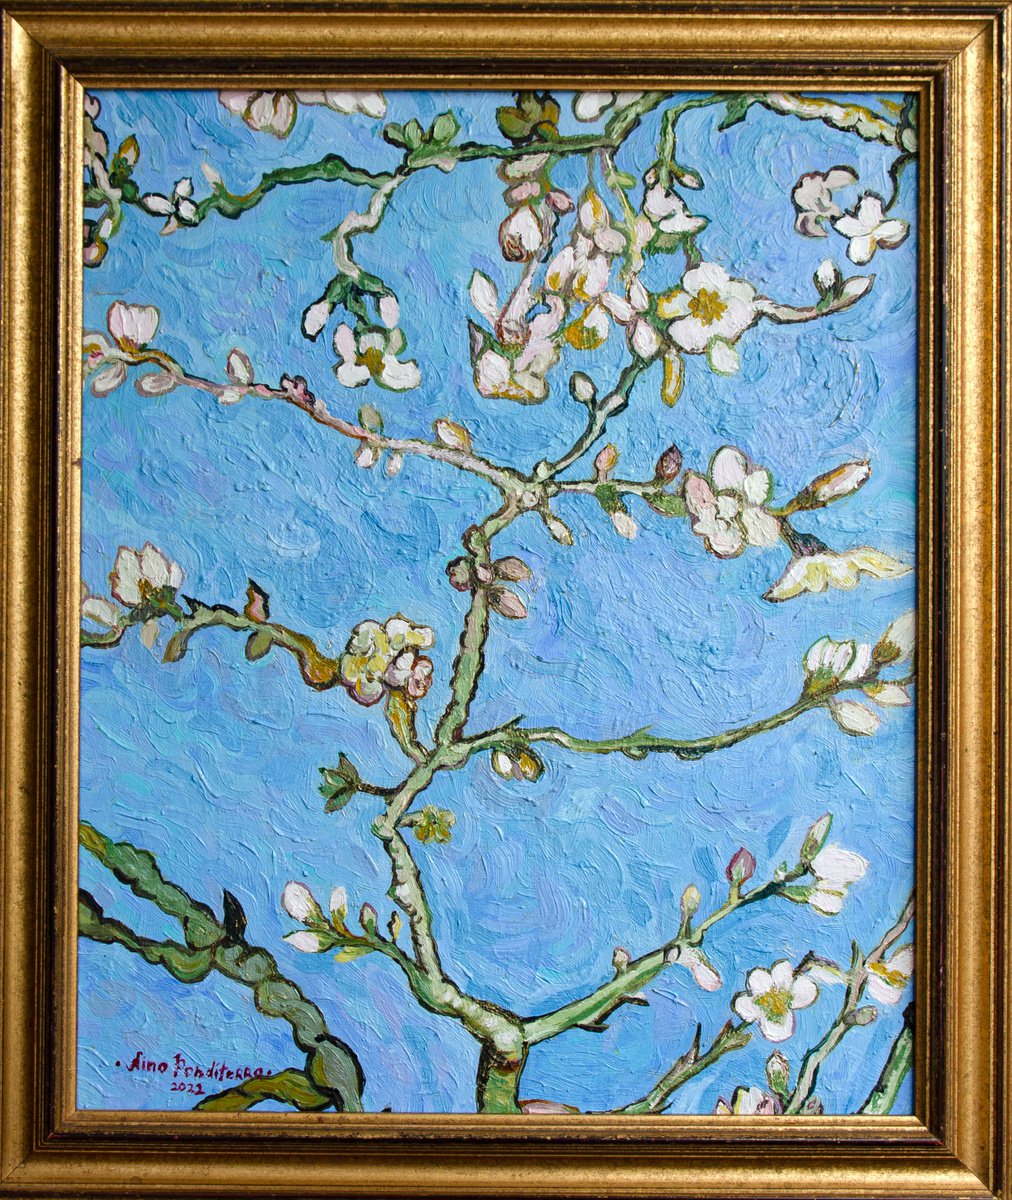 Almond blossom by Nino Ponditerra